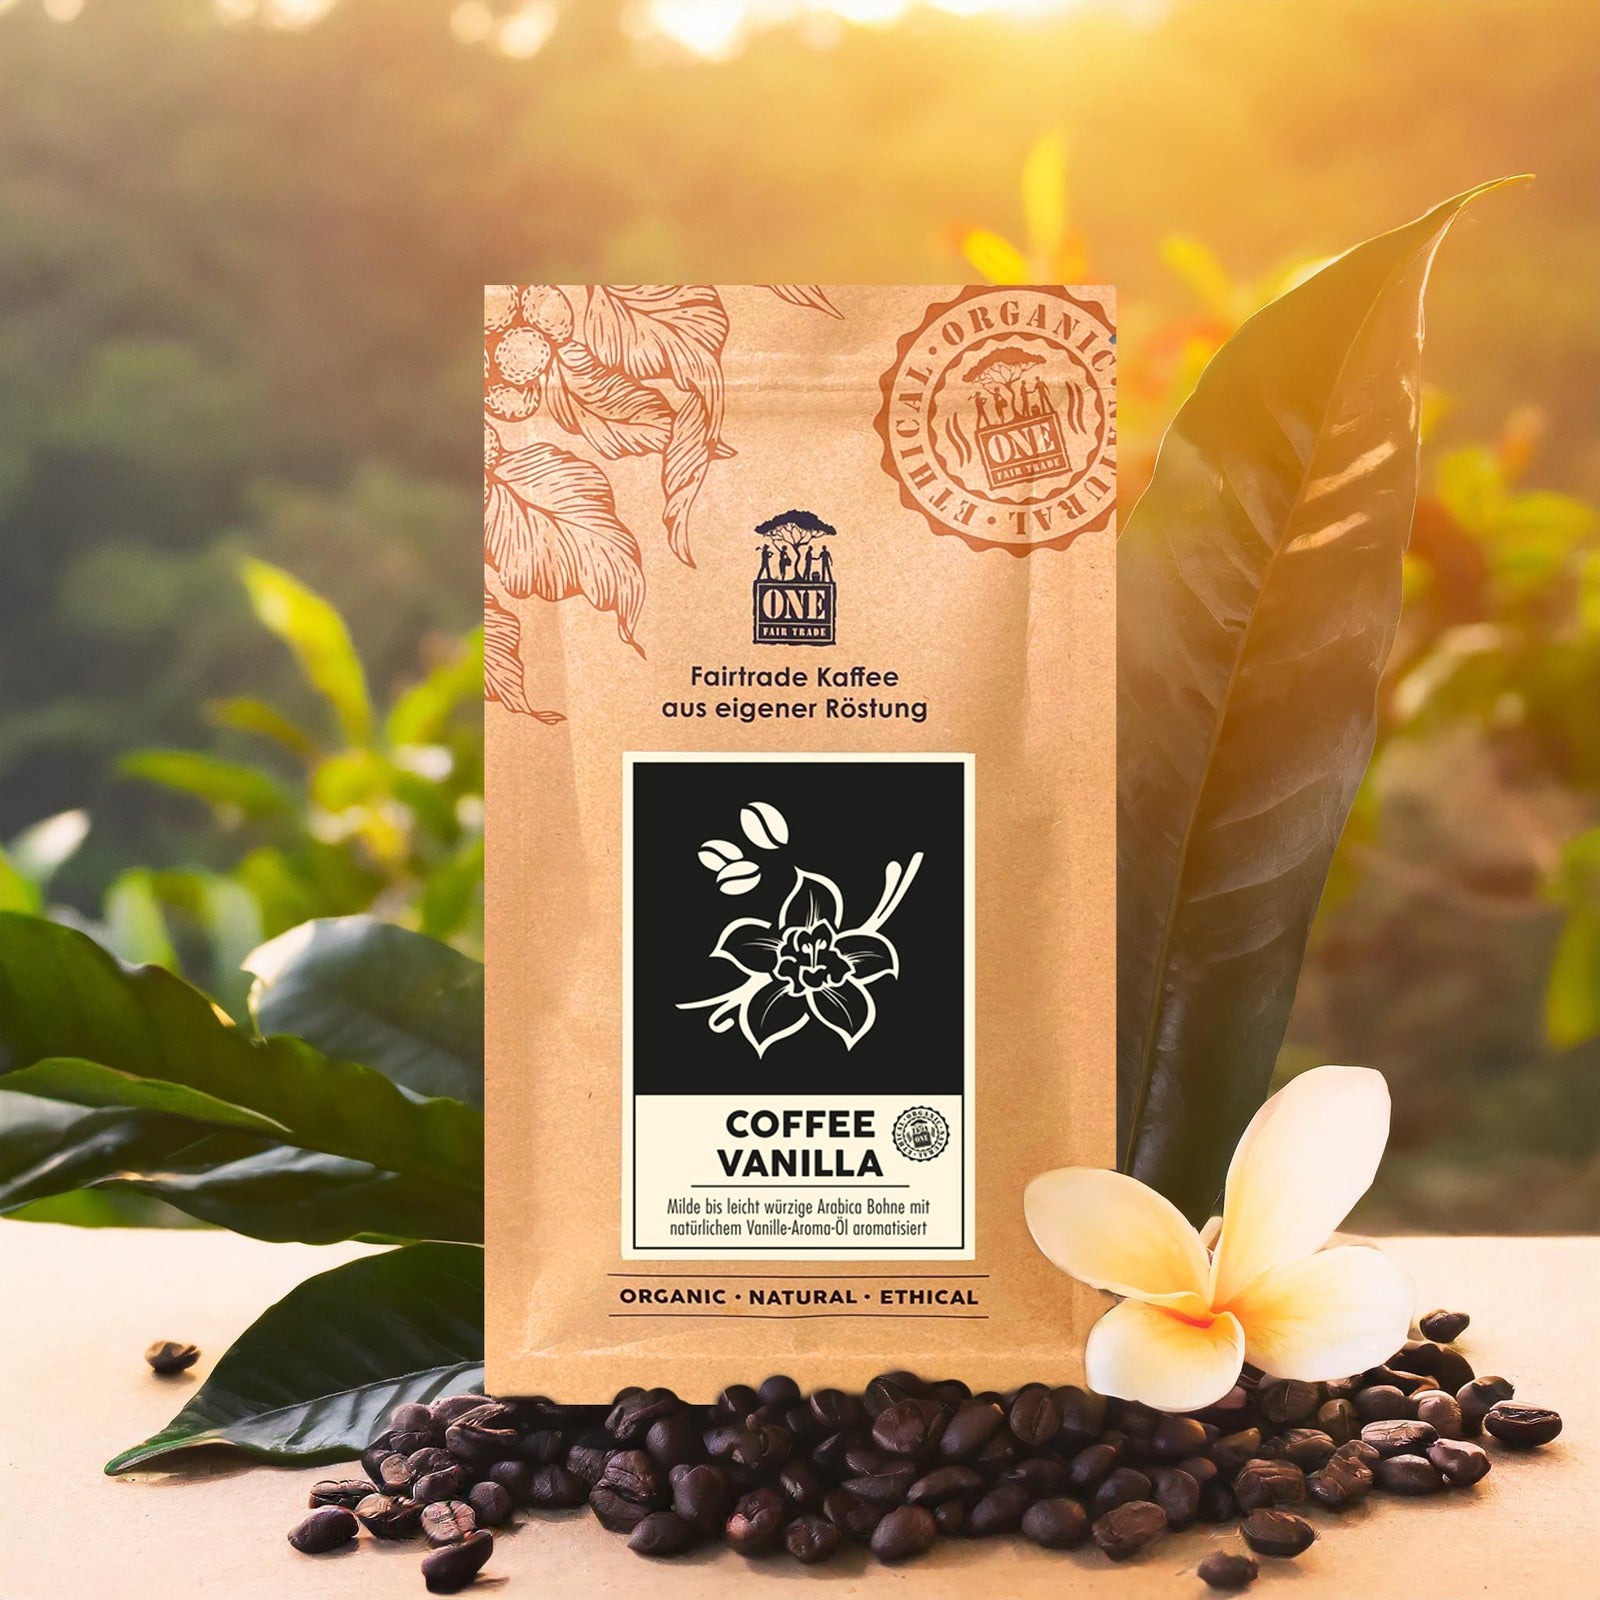 Coffee Vanilla Tüte mit fairtrade Kaffeebohnen und Blume als Dekoration. Der Hintergrund sind verschwommene helle Blätter mit Sonnenschein.